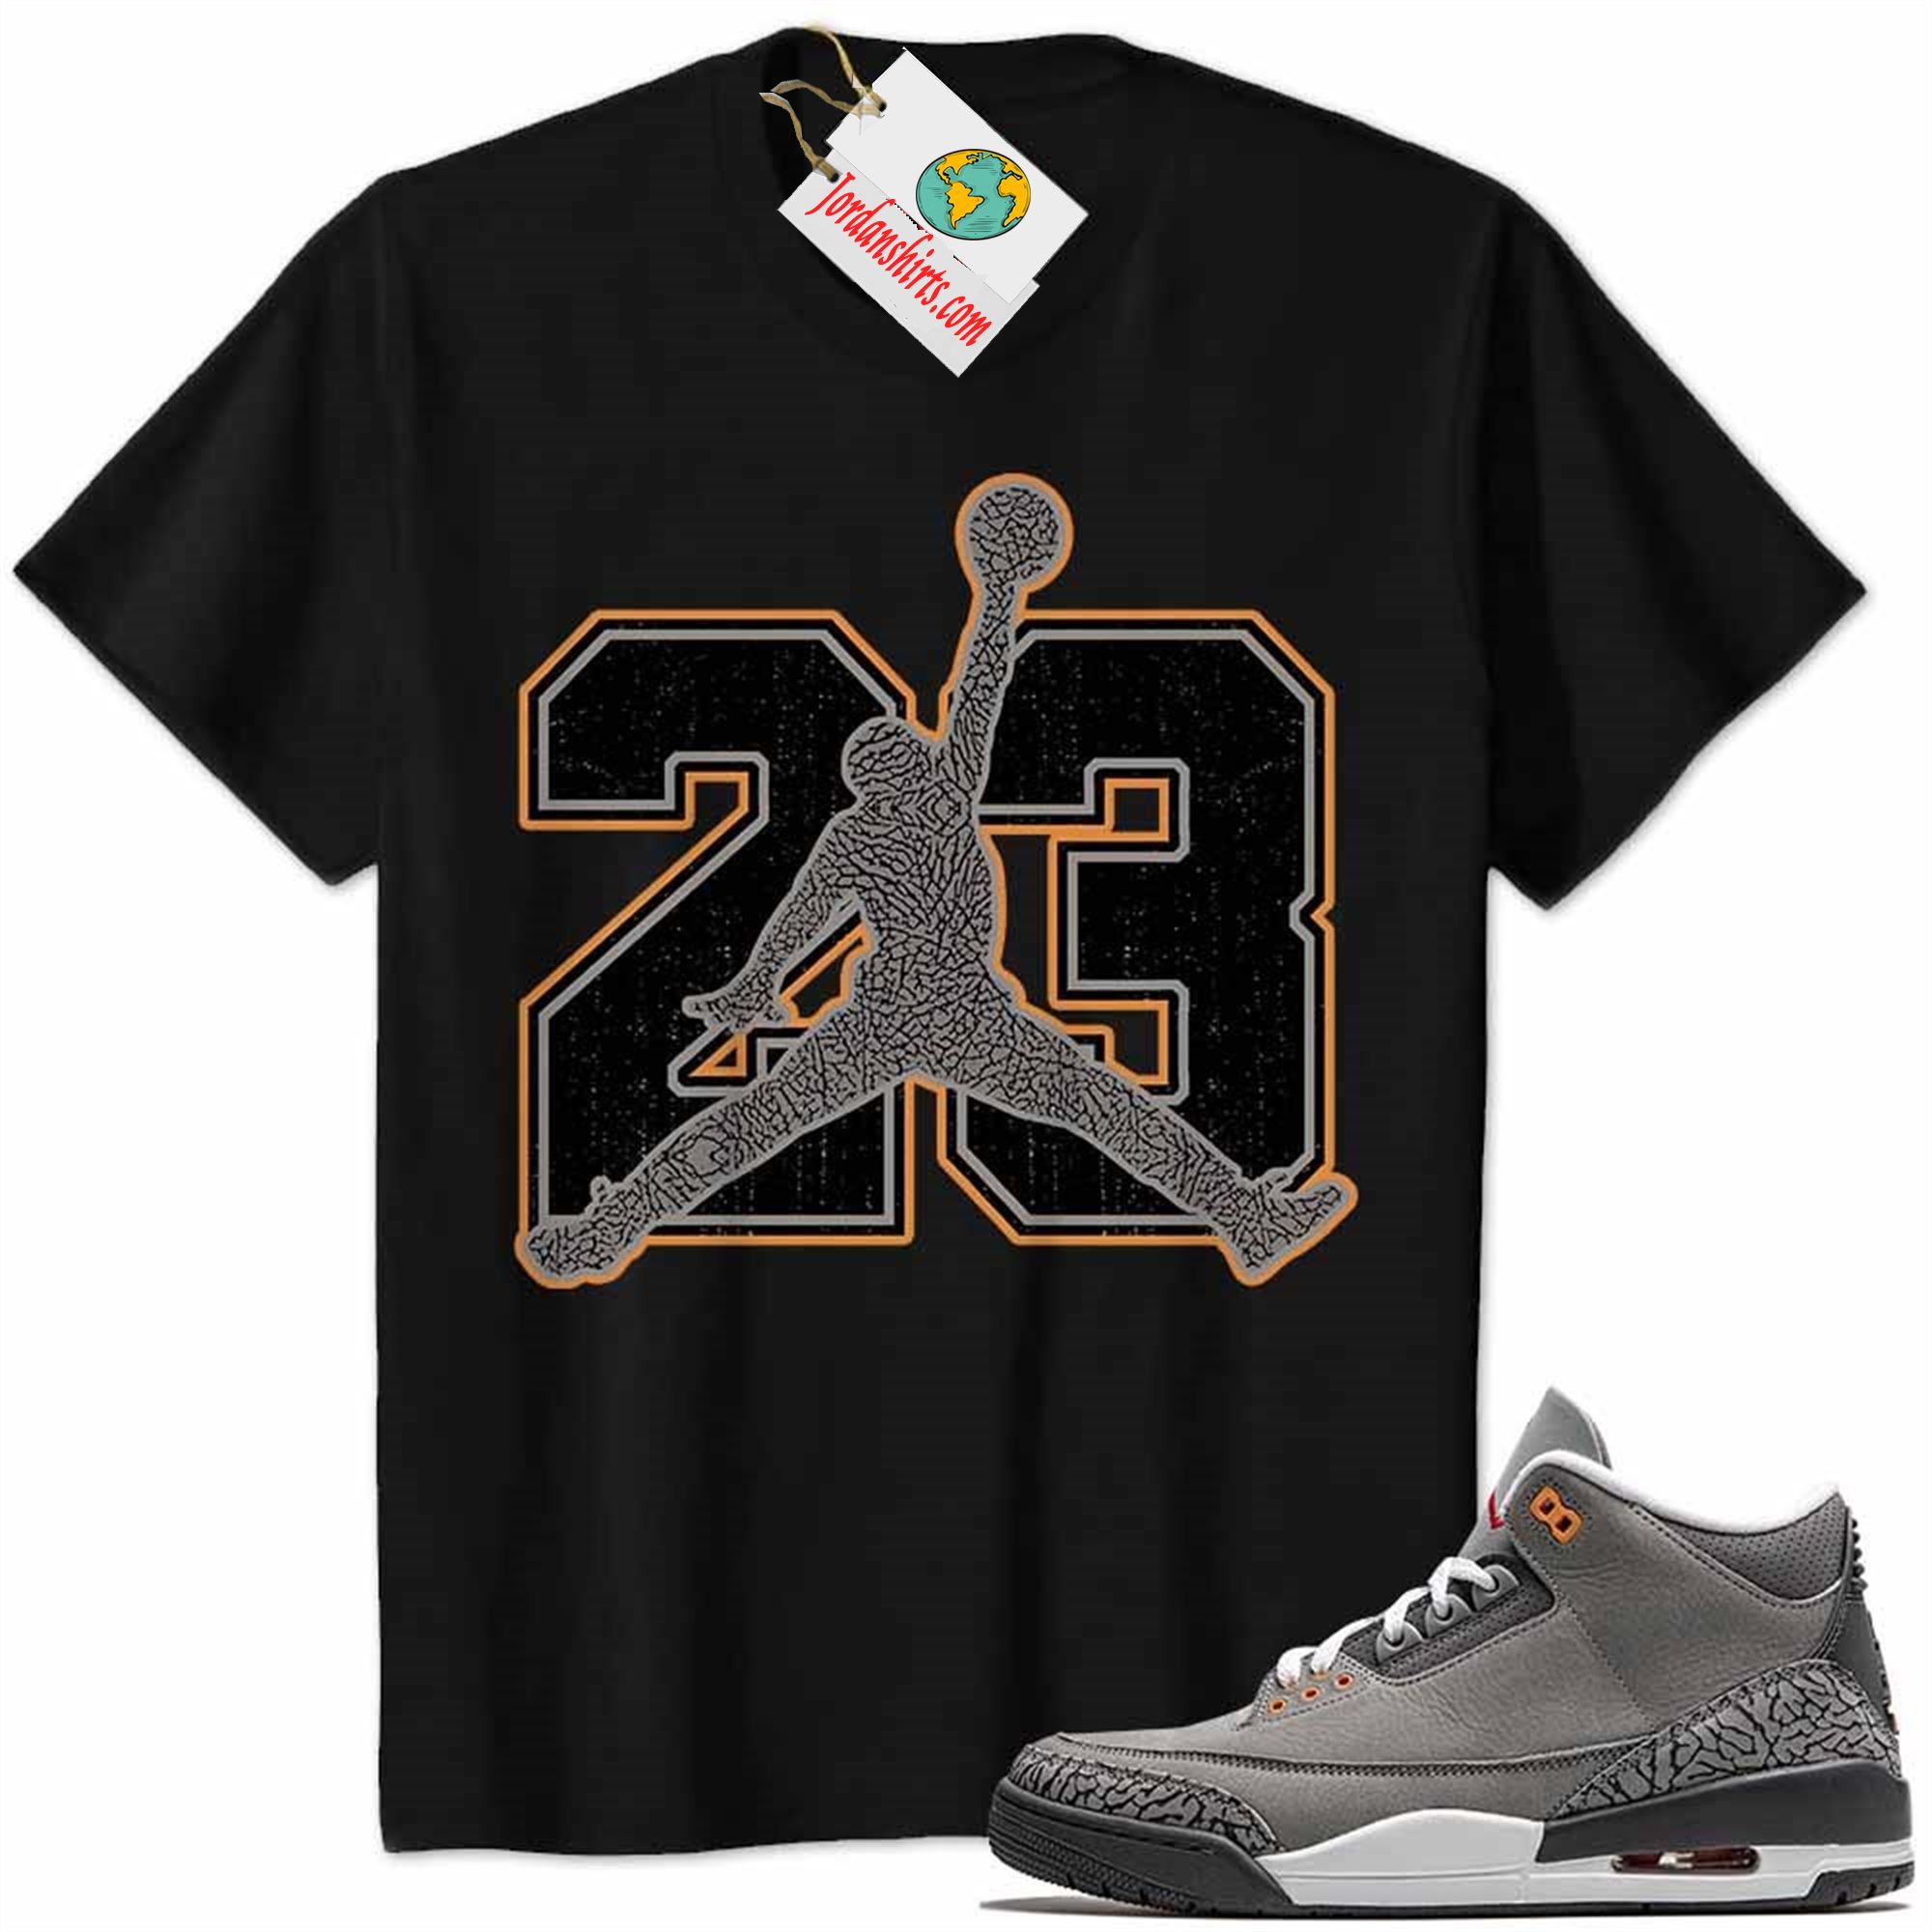 Jordan 3 Shirt, Jordan 3 Cool Grey Shirt Jumpman No23 Black Plus Size Up To 5xl